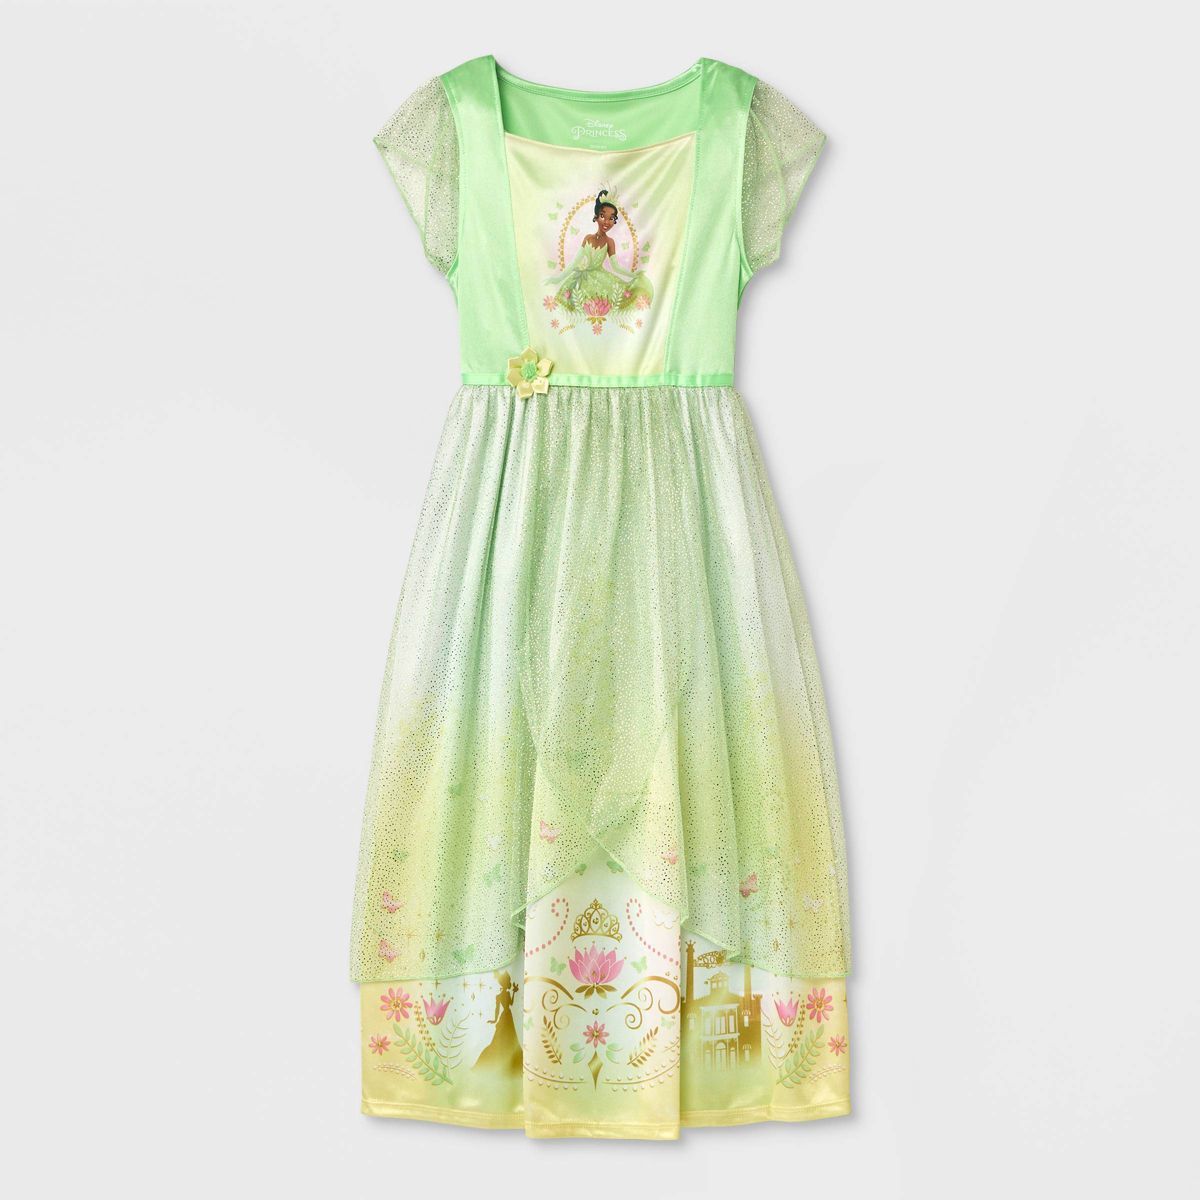 Girls' Disney Princess Tiana's Palace NightGown - Green | Target